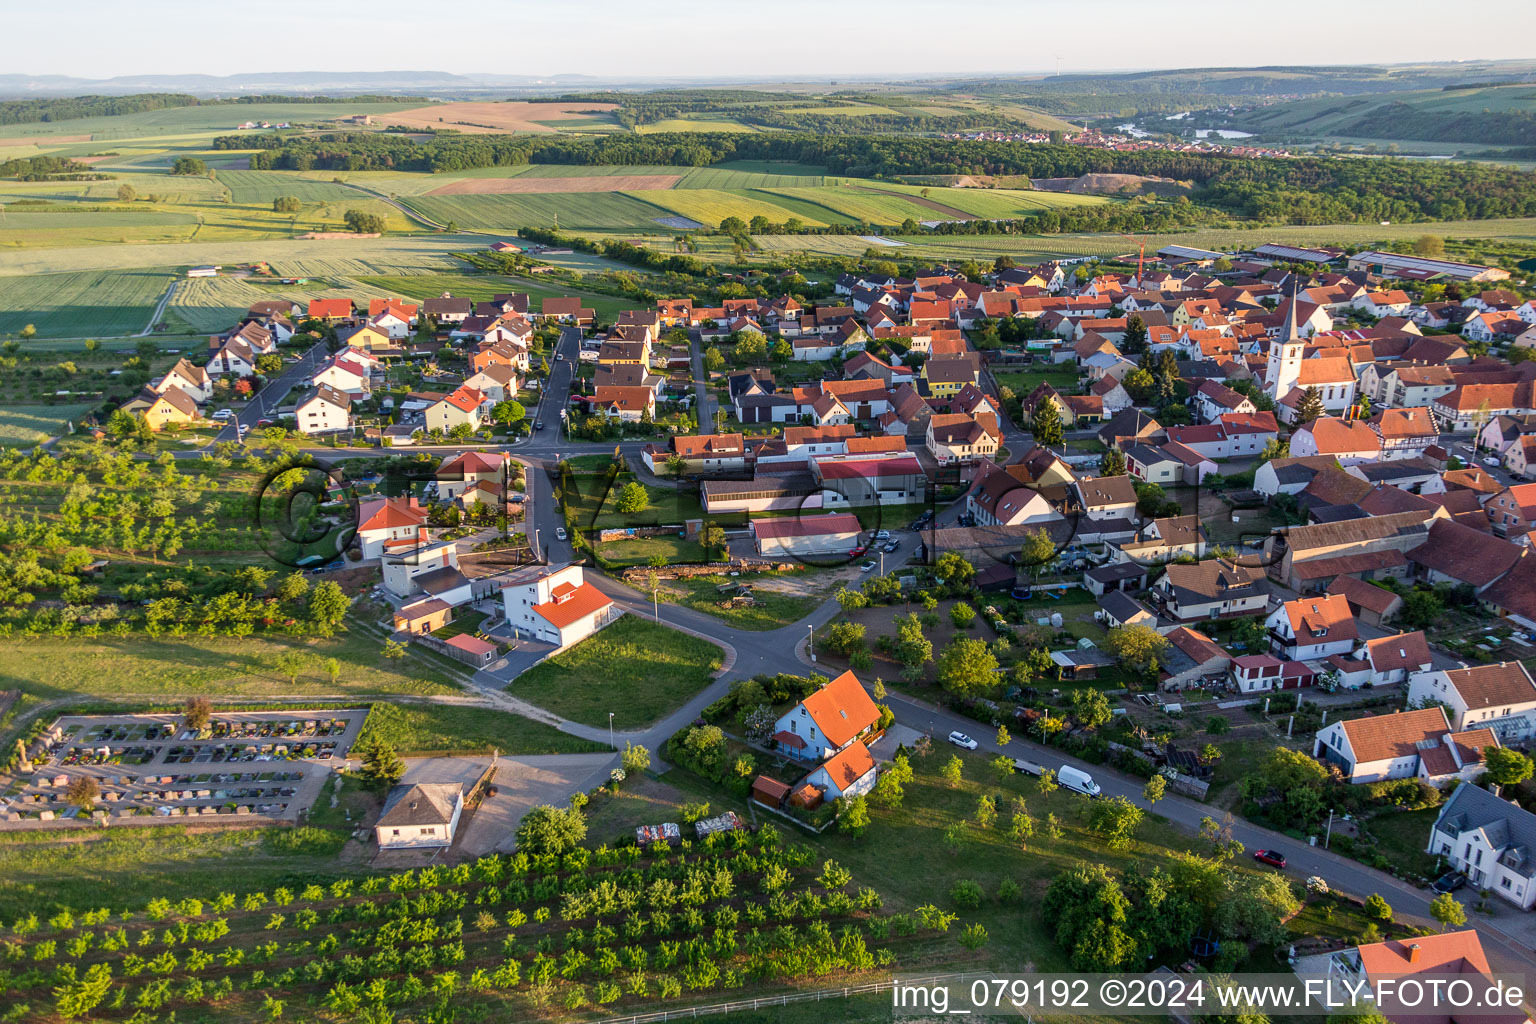 Luftbild von Dorf - Ansicht am Rande von landwirtschaftlichen Feldern und Nutzflächen im Ortsteil Lindach in Kolitzheim im Bundesland Bayern, Deutschland